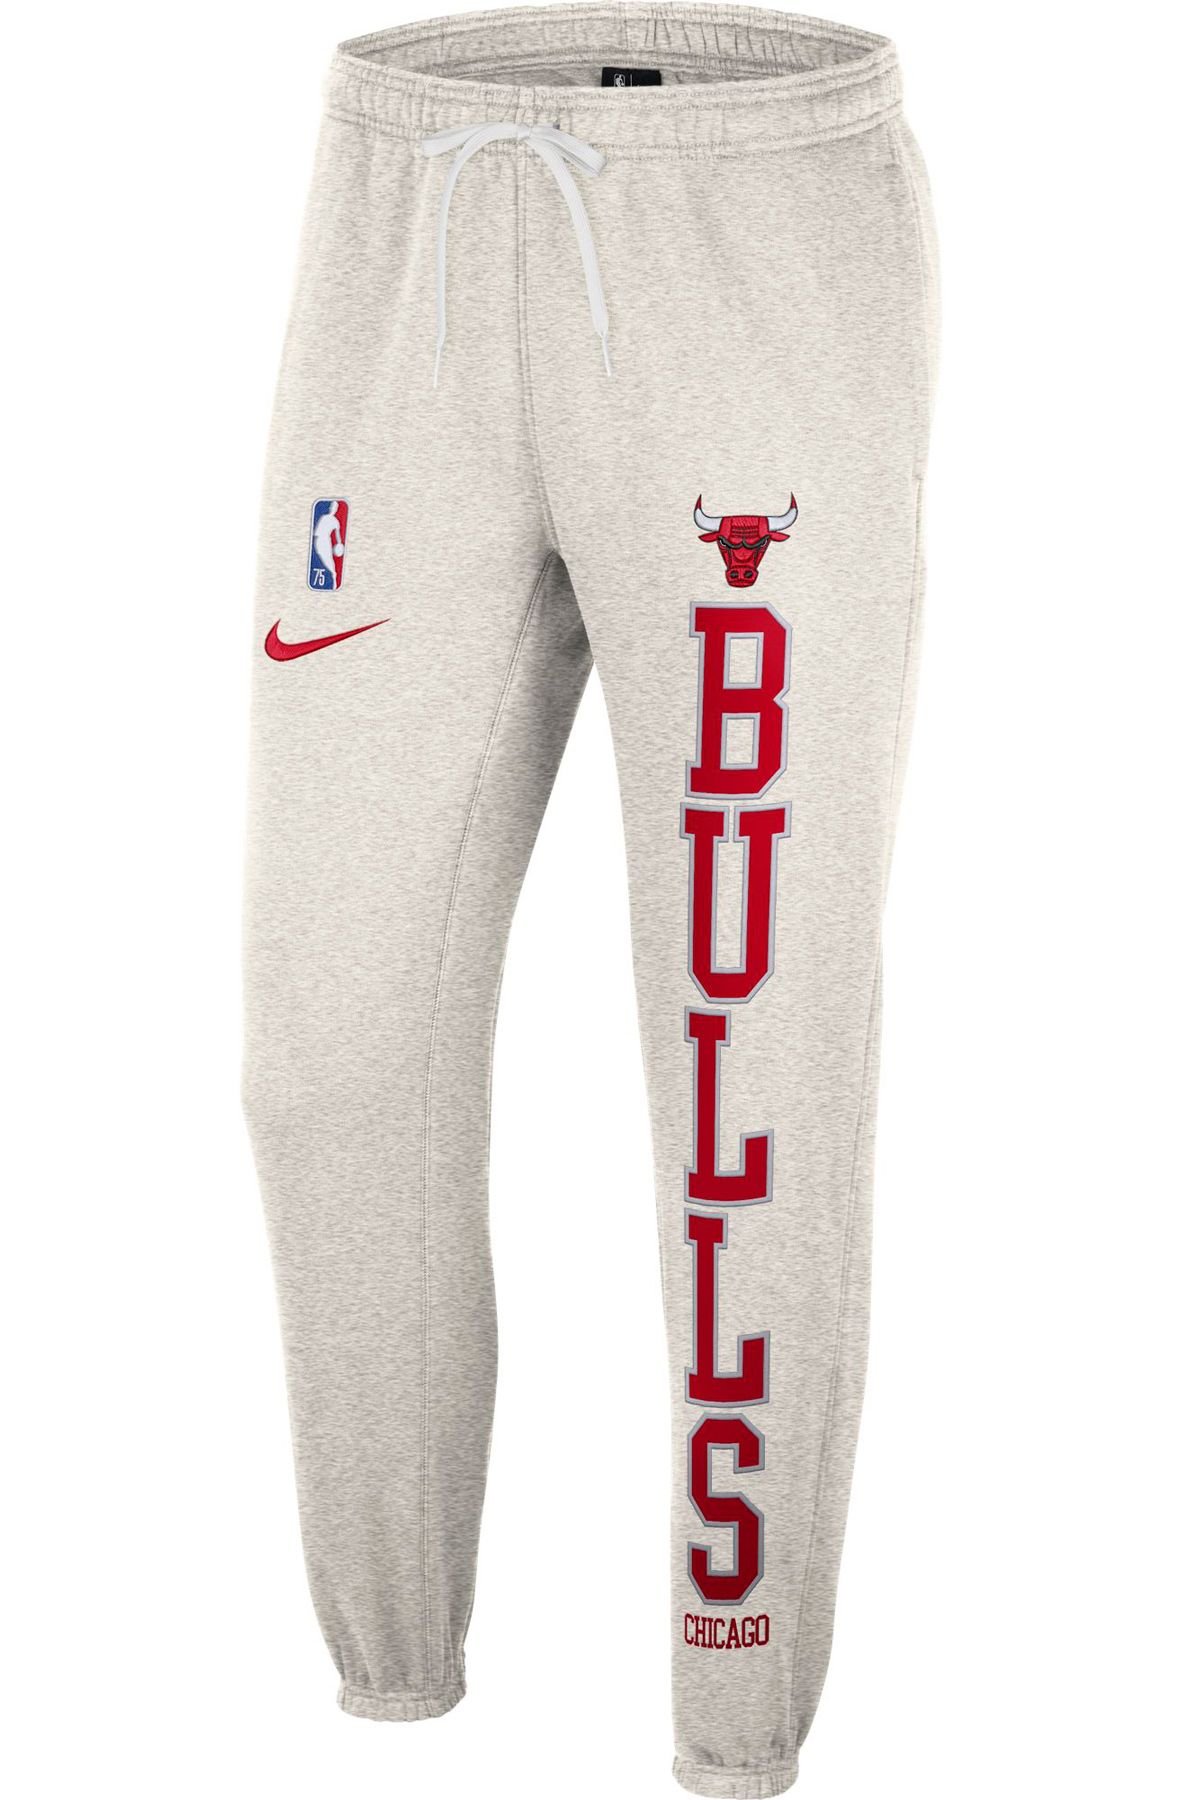 NBA, Pants, Chicago Bulls Pajama Pants Nba